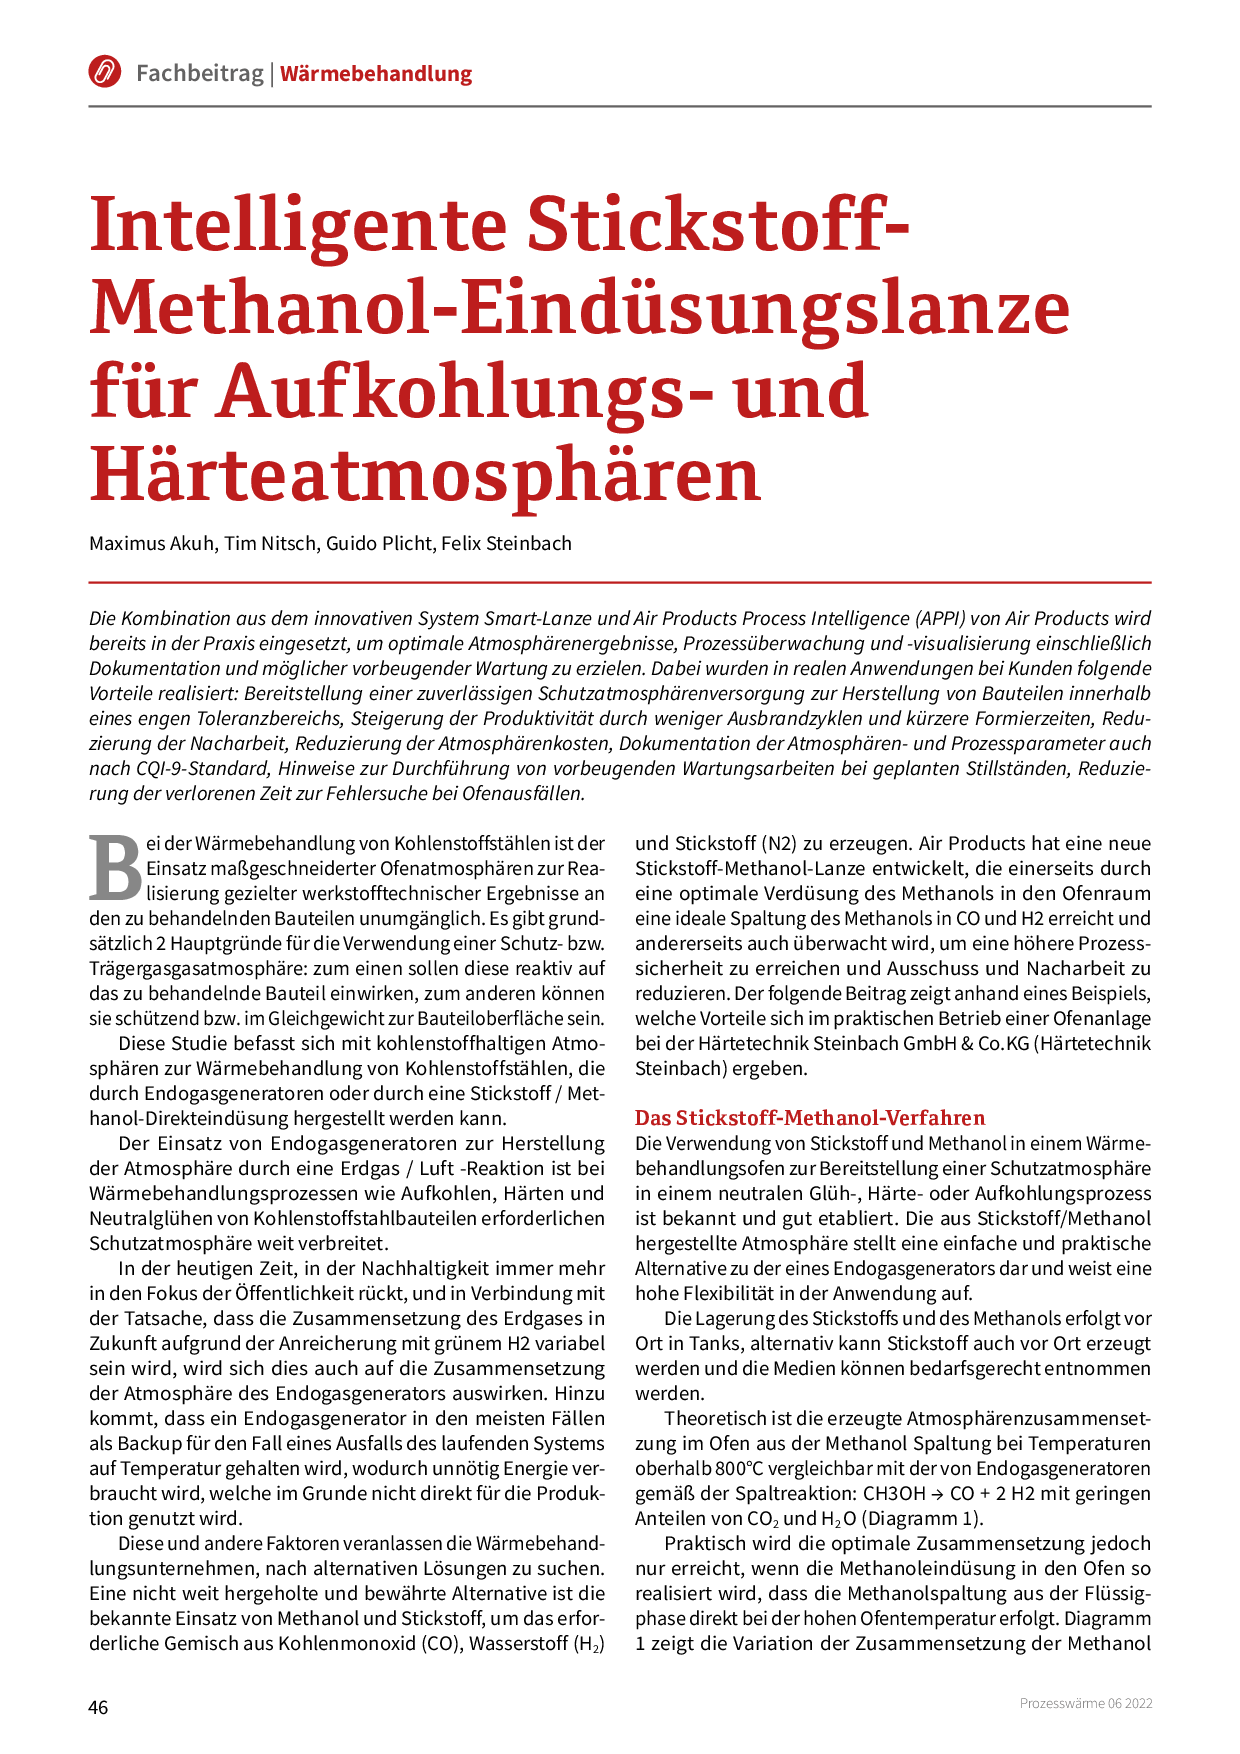 Intelligente Stickstoff-Methanol-Eindüsungslanze für Aufkohlungs- und Härteatmosphären